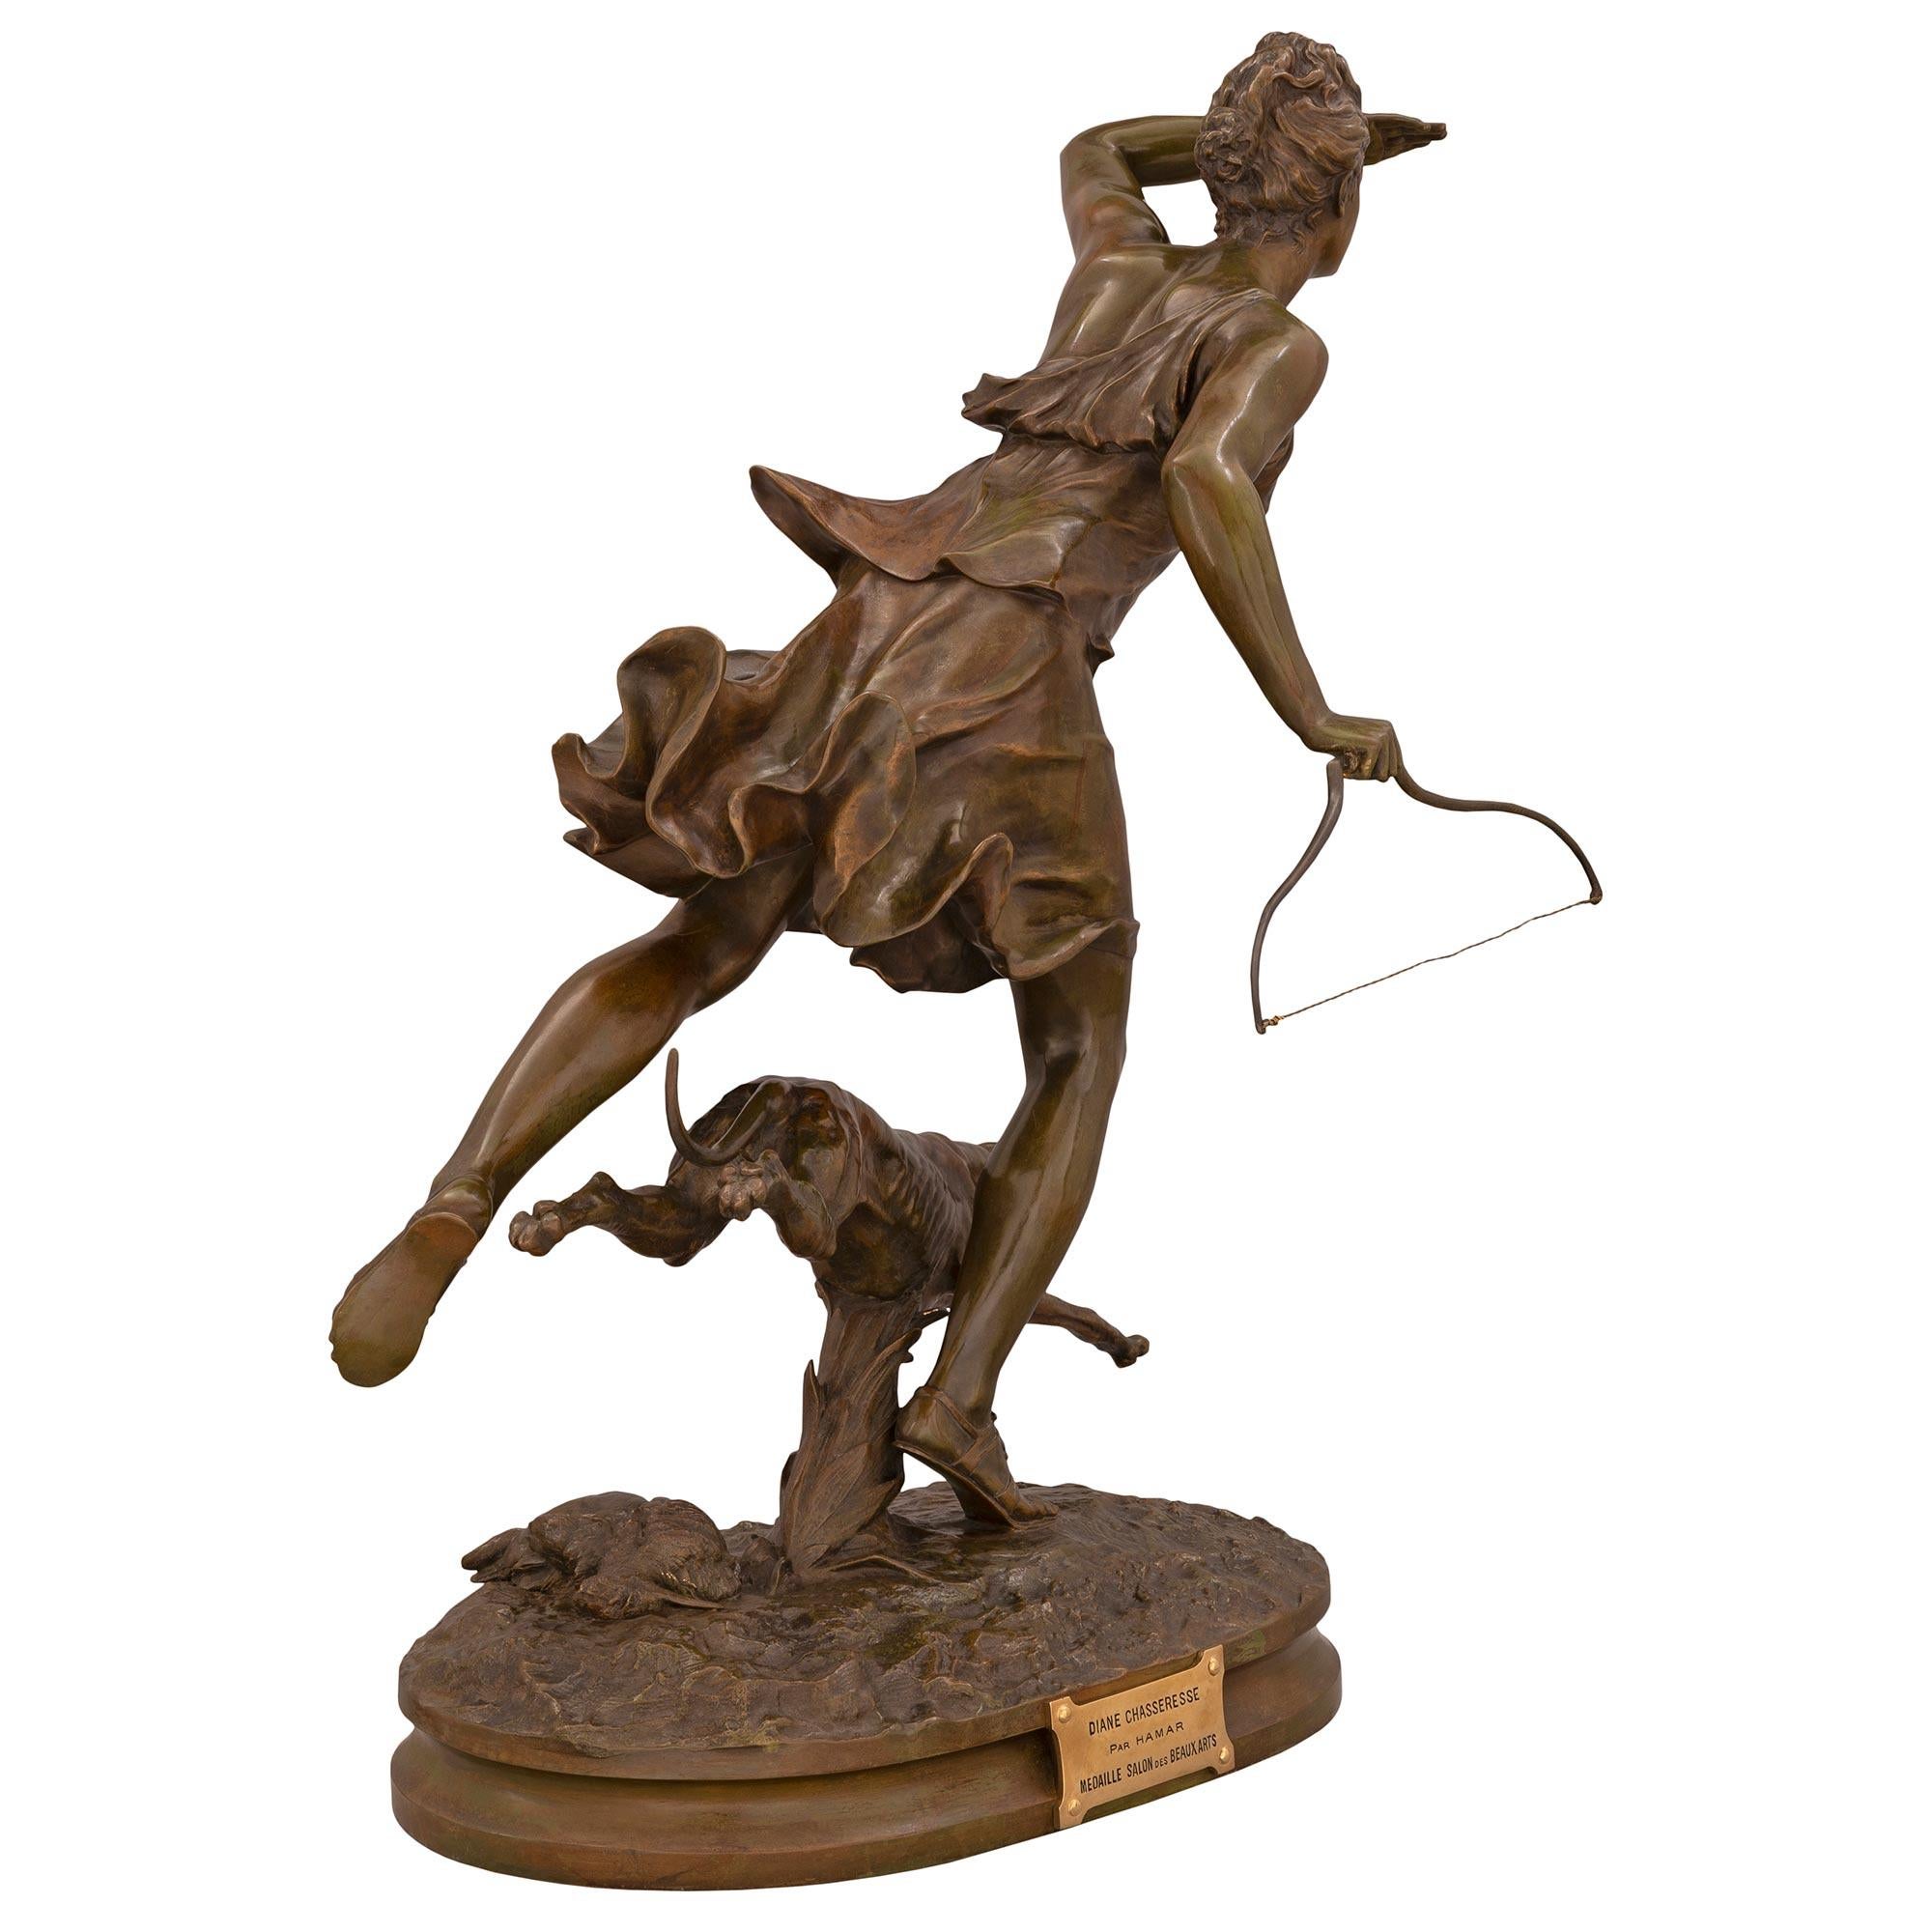 Superbe statue de Diane chasseresse et de son chien en bronze patiné et bronze doré de style Louis XVI, signée F. Hamar. La statue est surélevée par une élégante base oblongue avec une fine bordure tachetée et une texture de fond merveilleusement